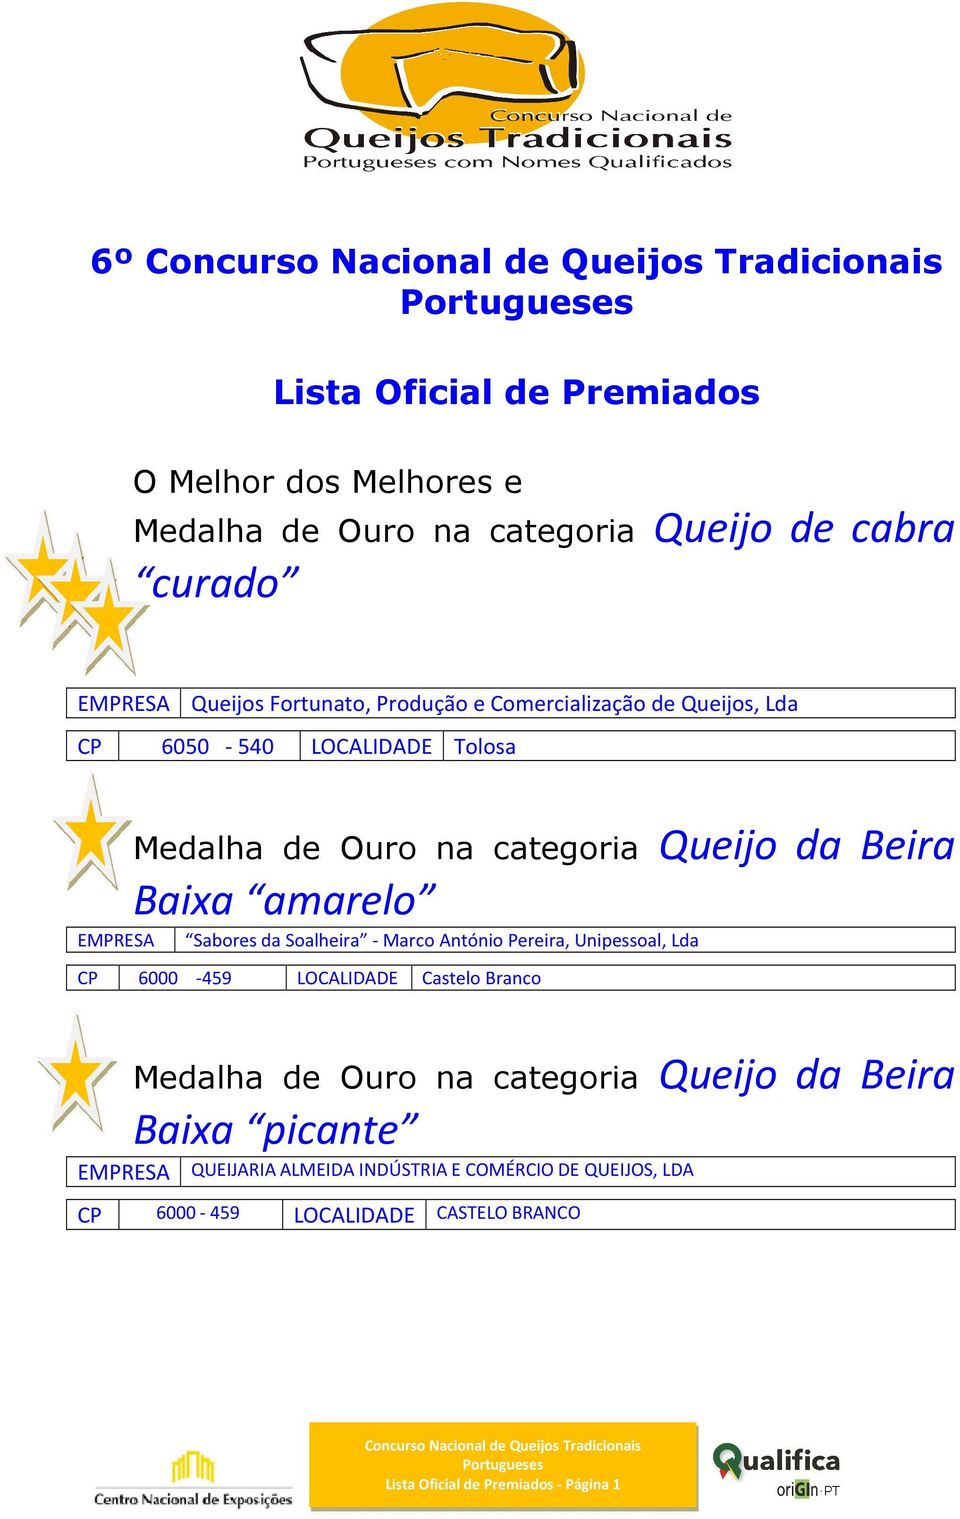 Soalheira - Marco António Pereira, Unipessoal, Lda CP 6000-459 LOCALIDADE Castelo Branco Medalha de Ouro na categoria Queijo da Beira Baixa